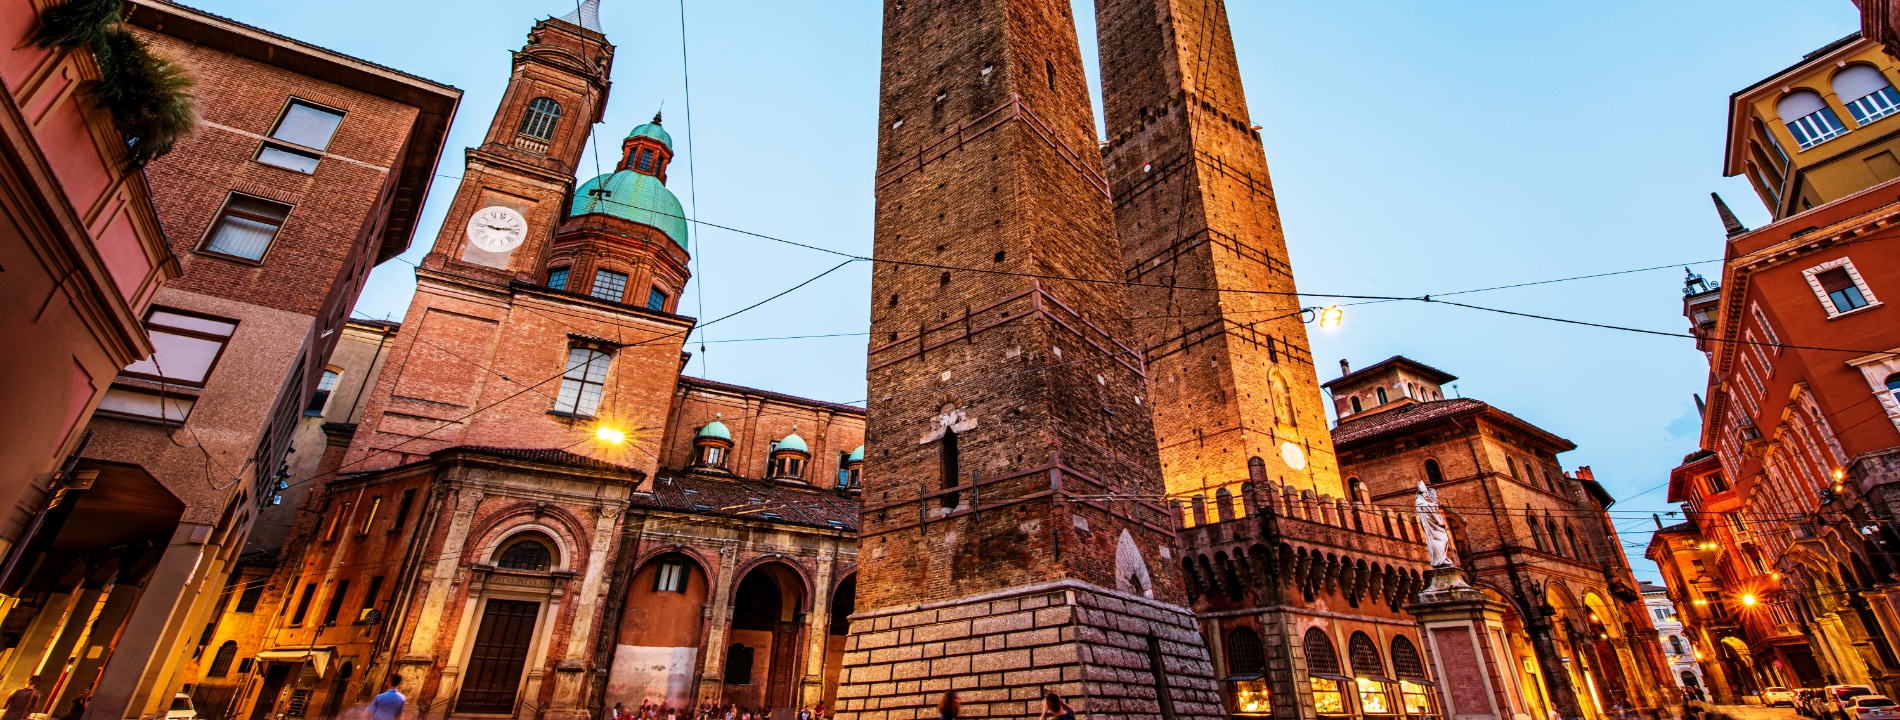 Torre Garisenda e degli Asinelli, Bologna | Eden Viaggi